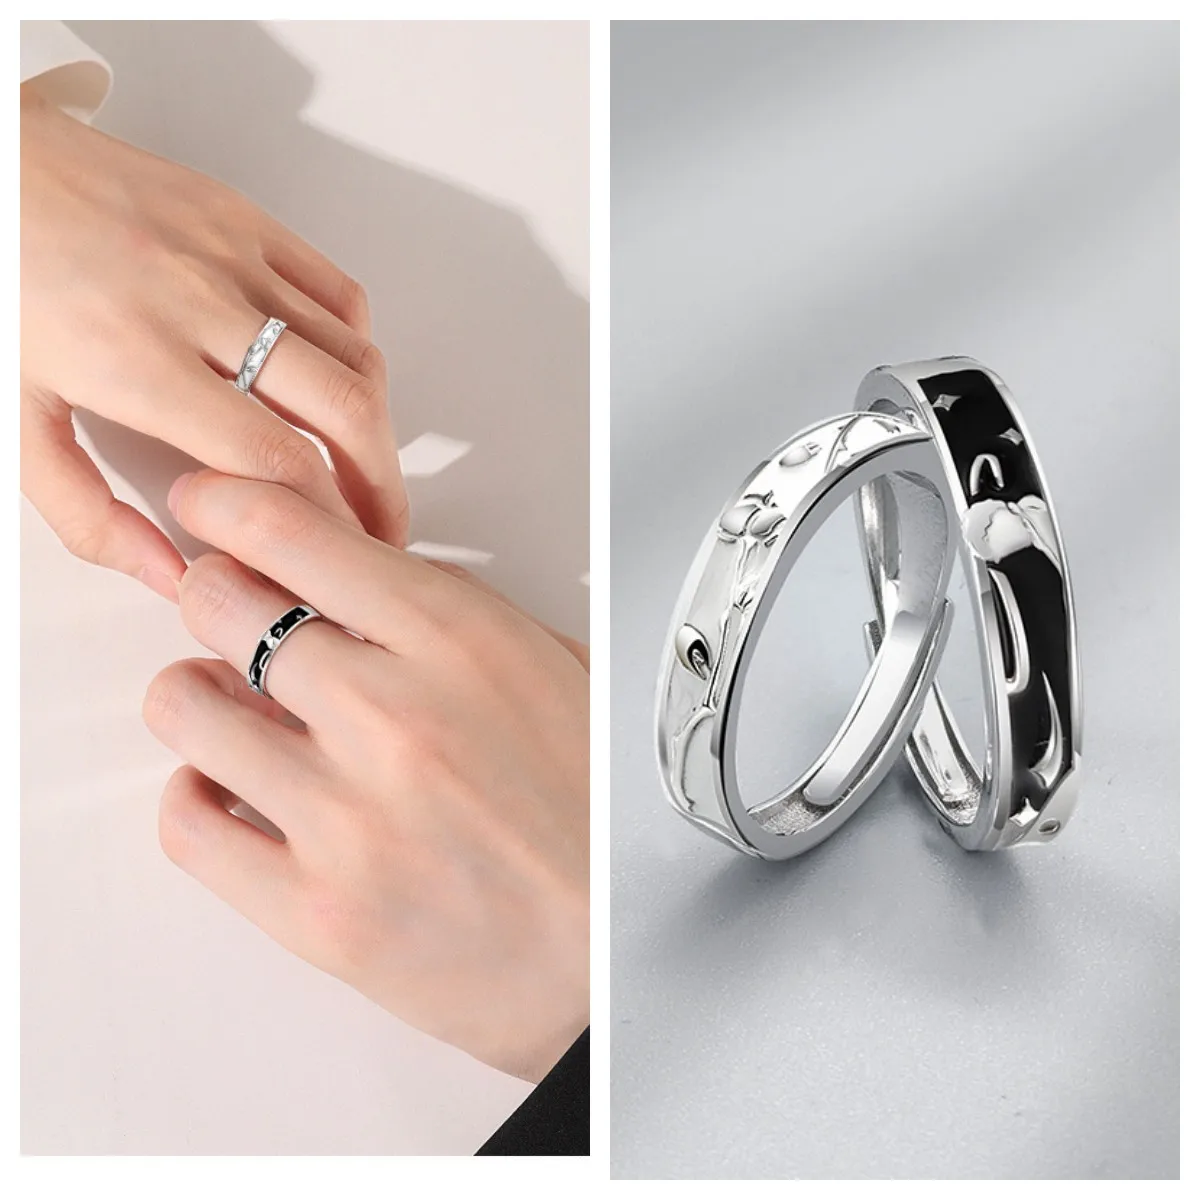 Кольцо для пары Принц и роза, кольцо из стерлингового серебра 925 пробы для влюбленных, подарок на День рождения или фестиваль для парня и девушки